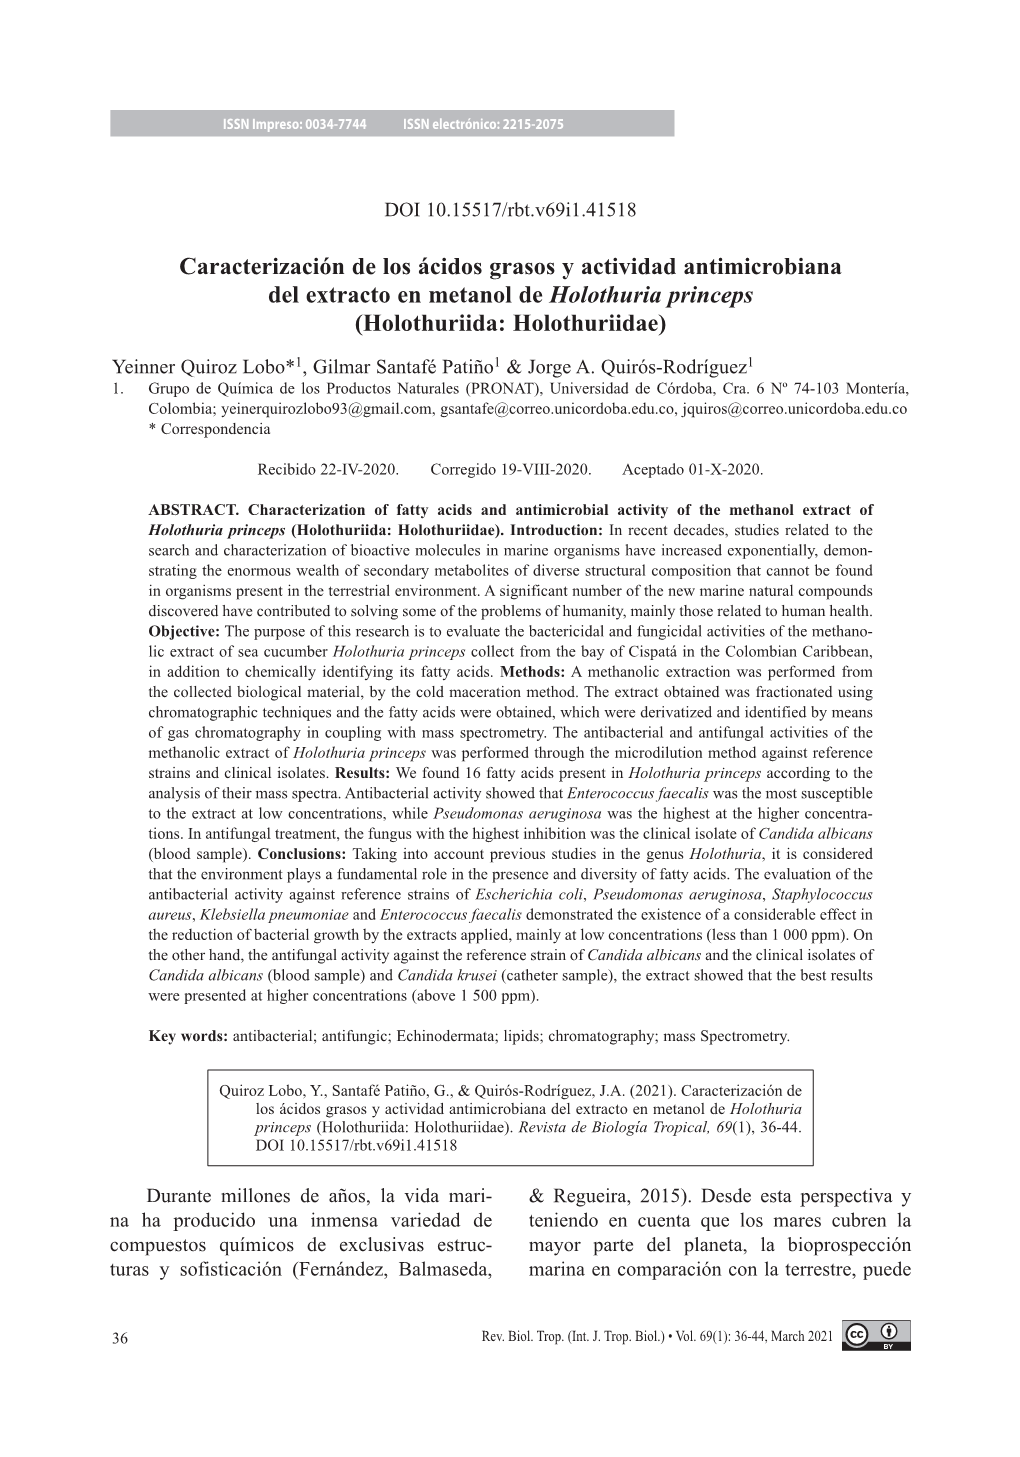 Caracterización De Los Ácidos Grasos Y Actividad Antimicrobiana Del Extracto En Metanol De Holothuria Princeps (Holothuriida: Holothuriidae)